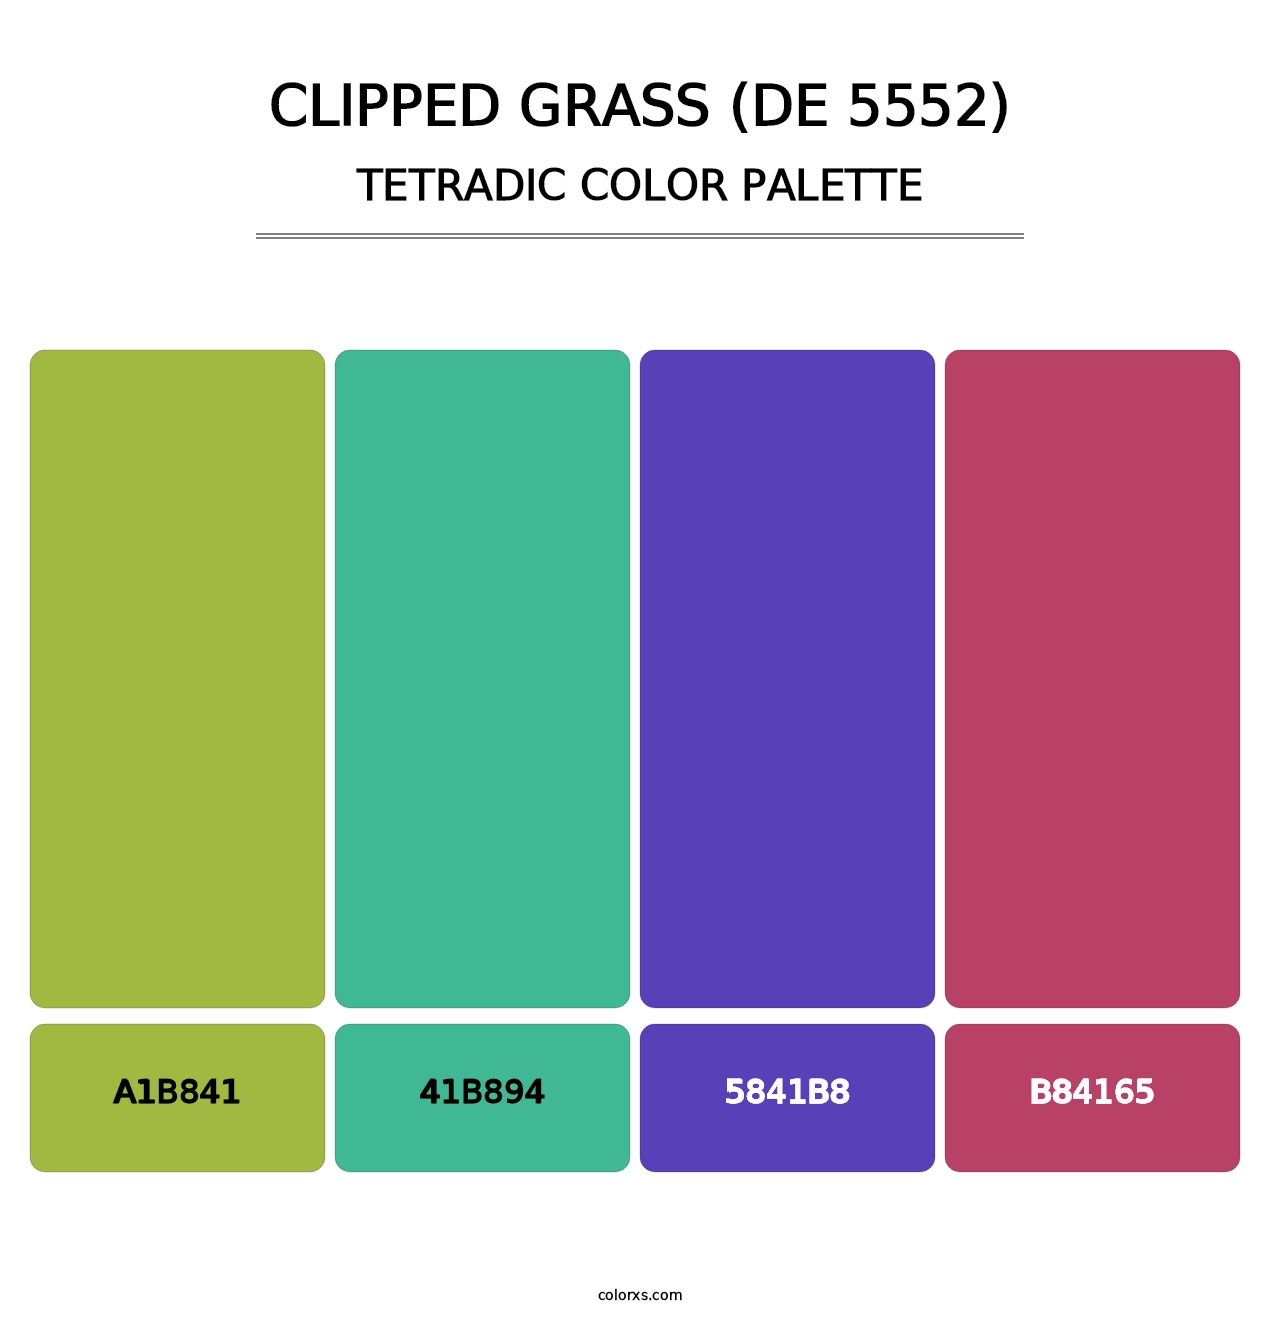 Clipped Grass (DE 5552) - Tetradic Color Palette